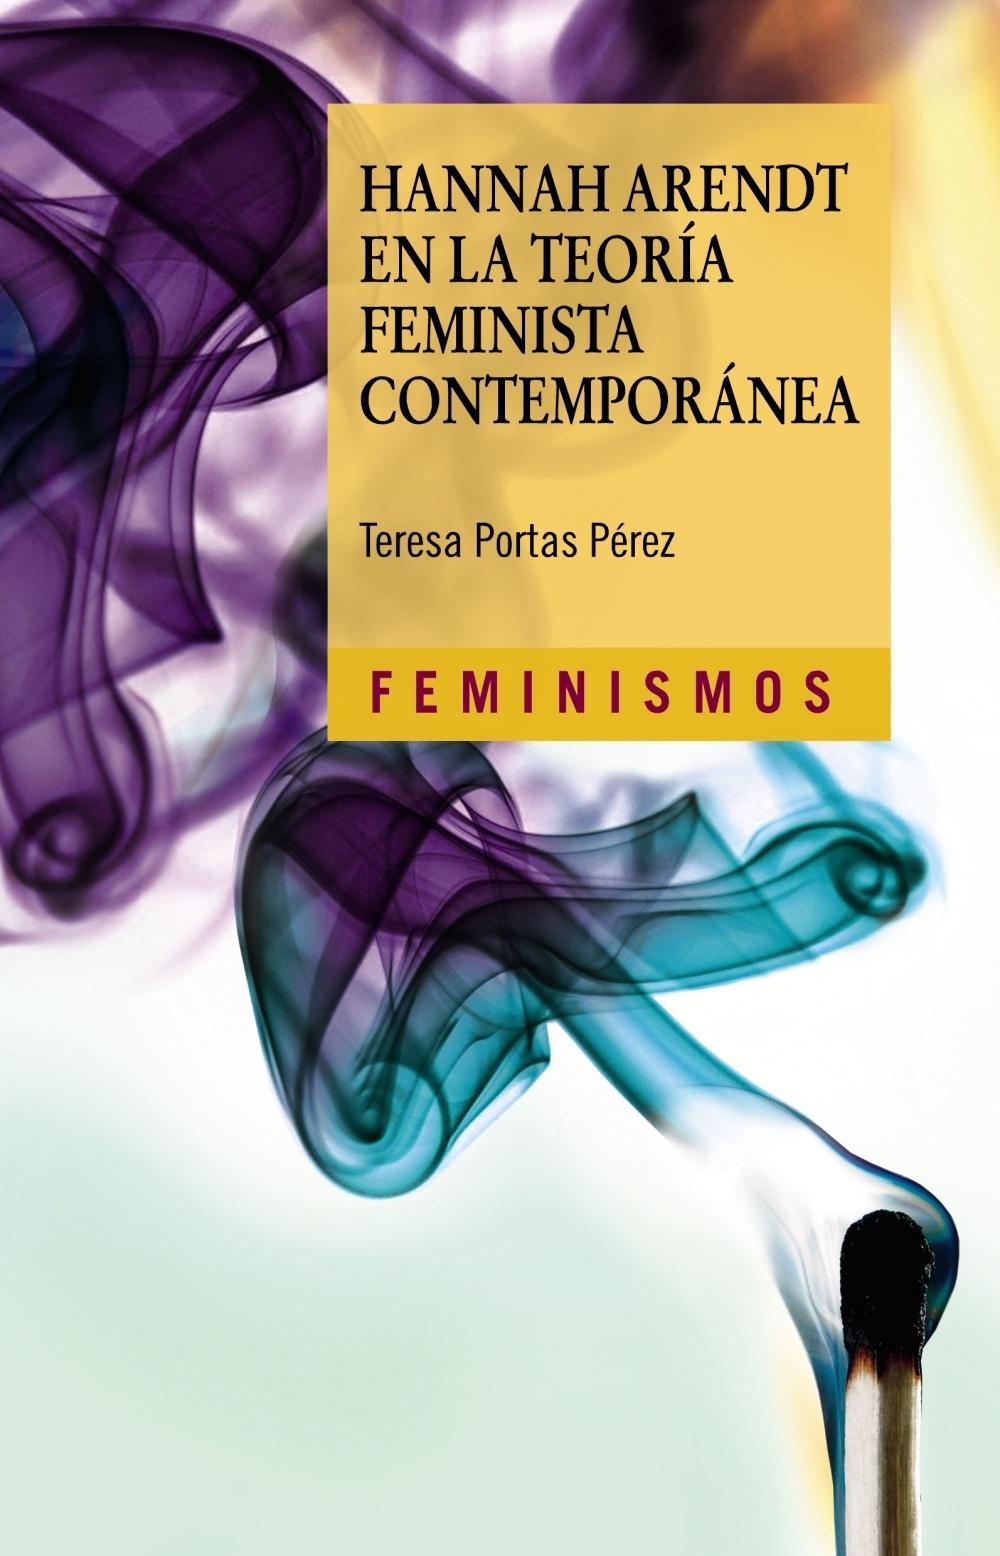 HANNAH ARENDT EN LA TEORÍA FEMINISTA CONTEMPORANEA. 